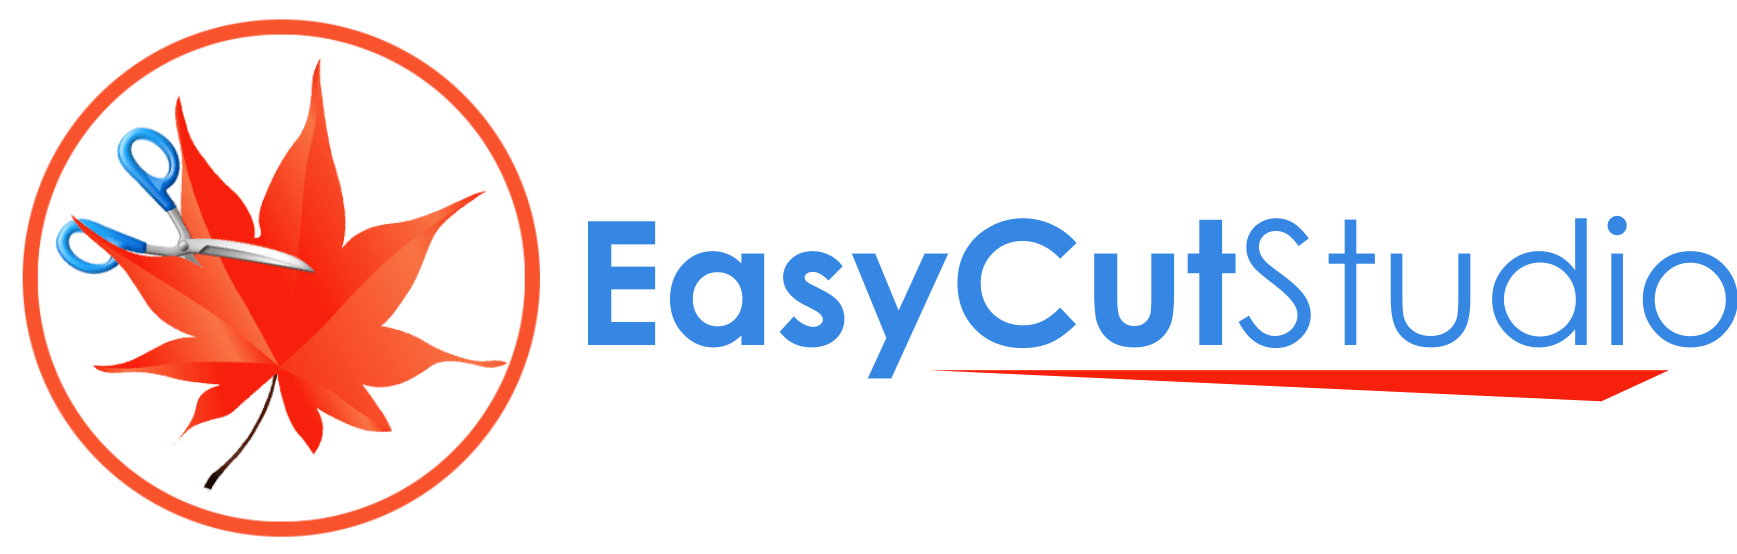 Easy Cut Studio Crack With Keygen